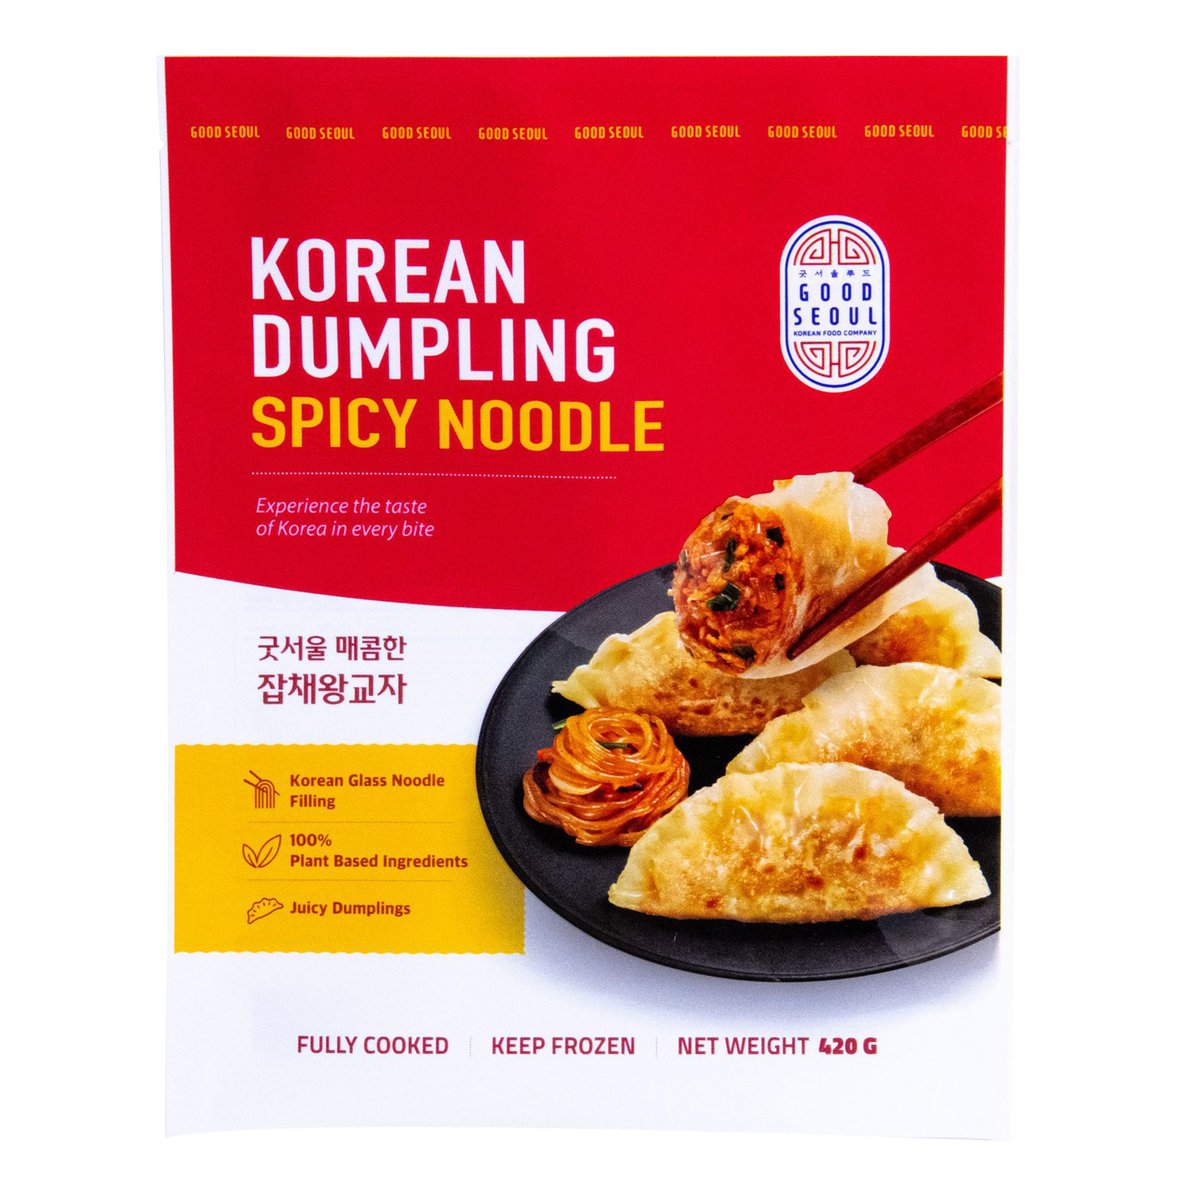 Good Seoul Spicy Noodle Korean Dumpling 420 g